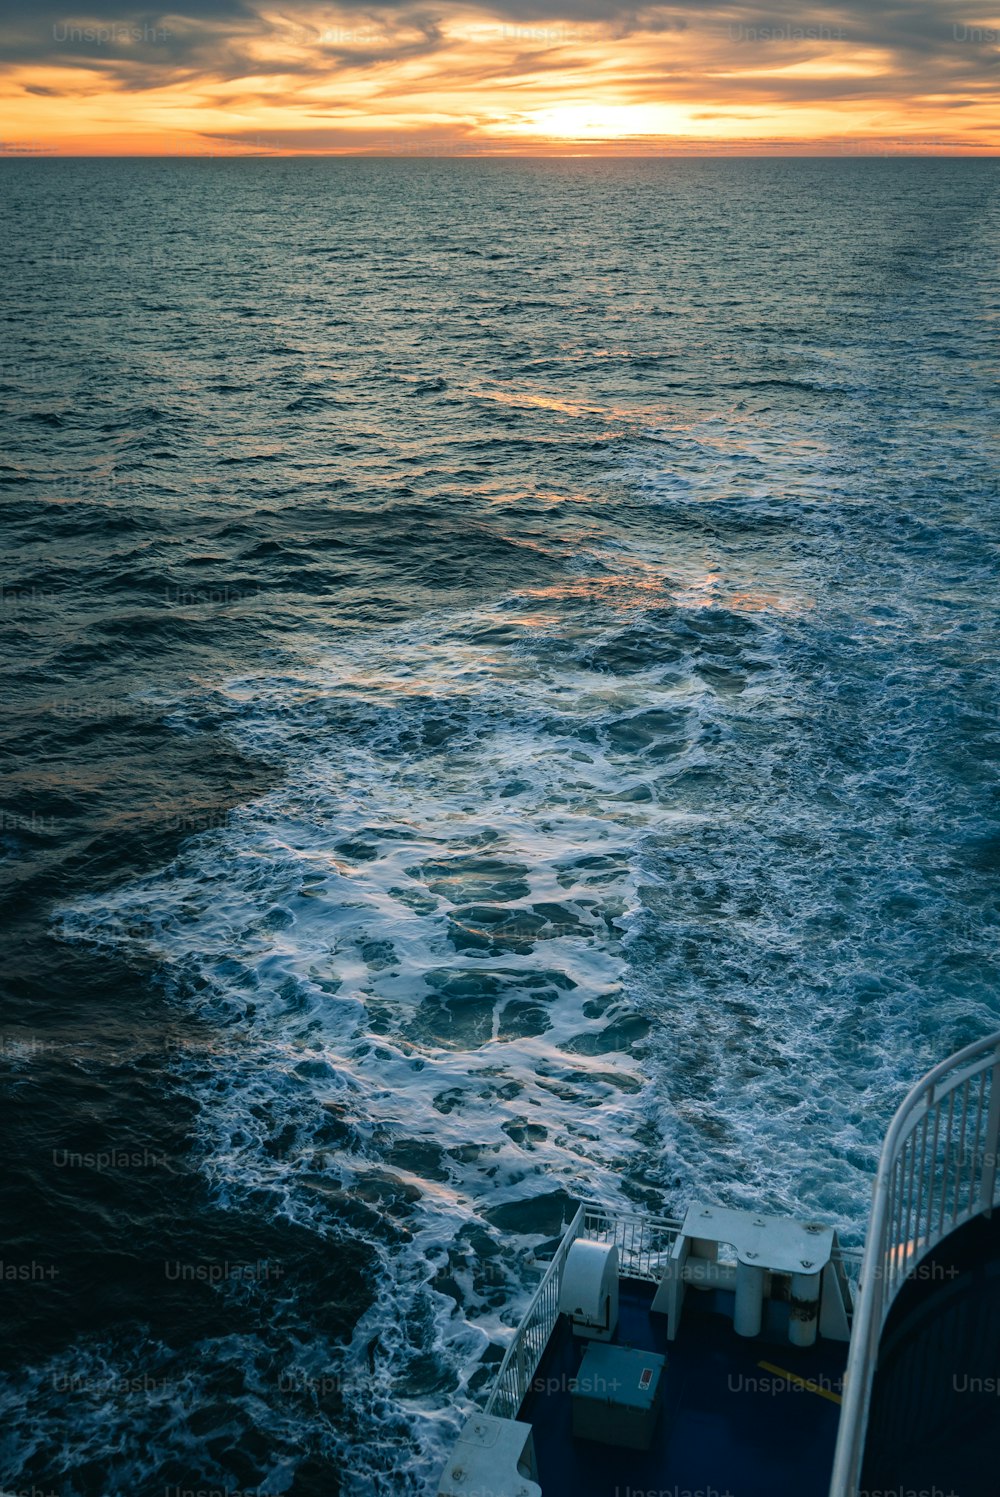 El sol se está poniendo sobre el océano visto desde un barco